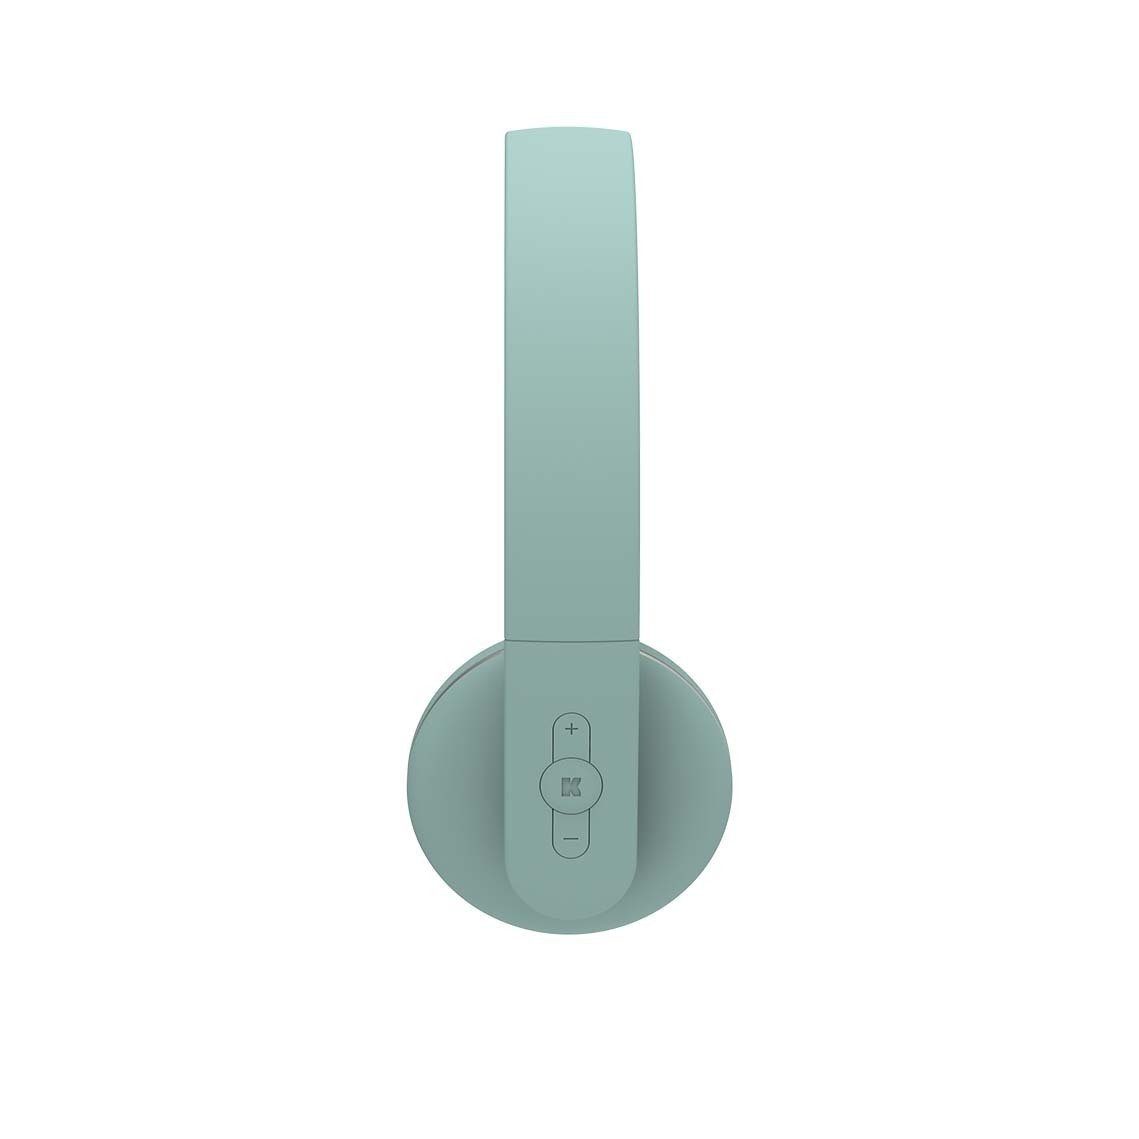 (KREAFUNK dusty II KREAFUNK Kopfhörer) green Bluetooth On-Ear-Kopfhörer aHEAD